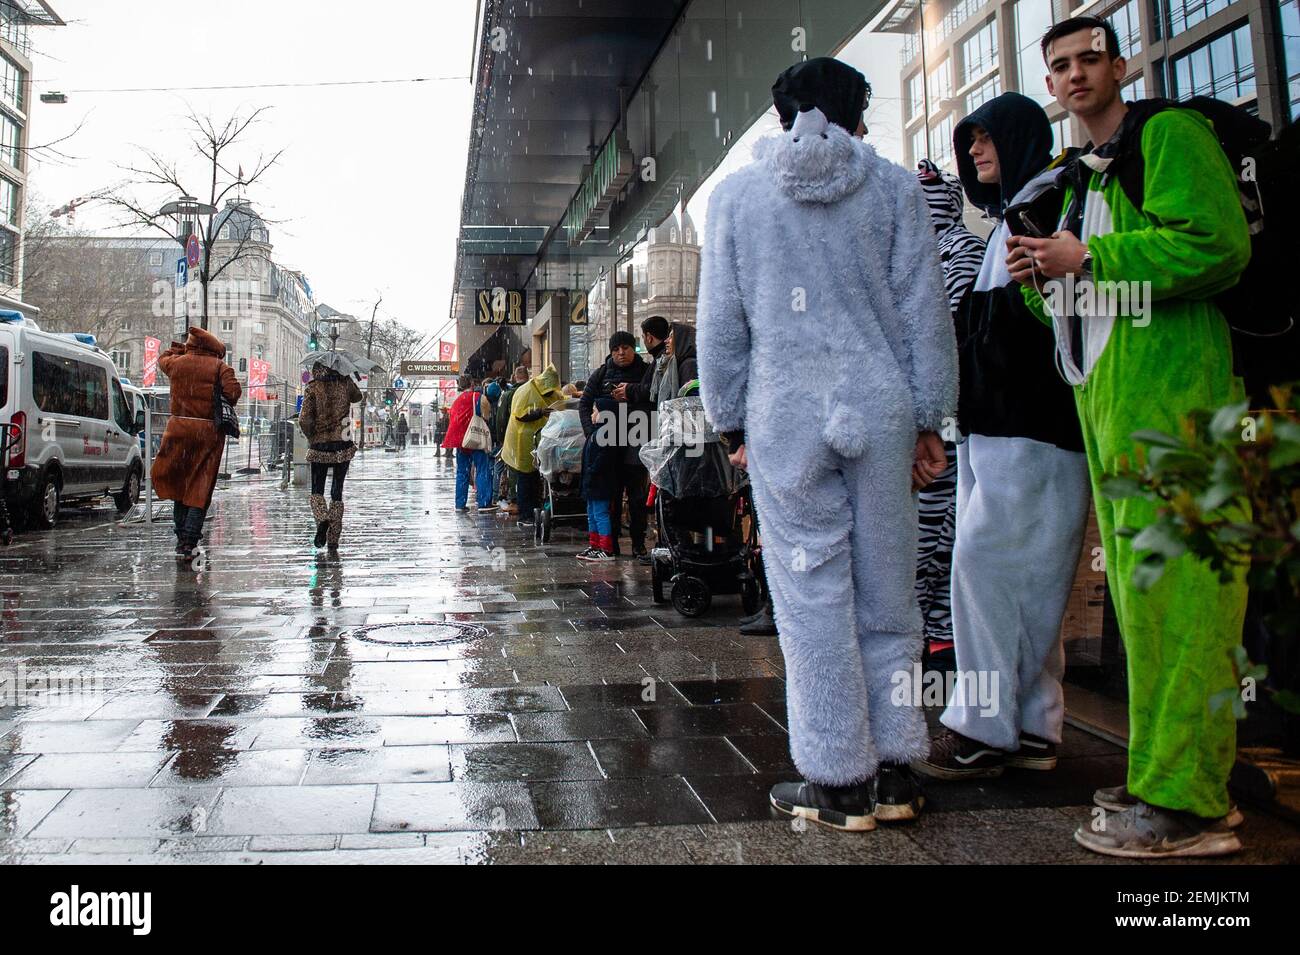 Las personas con trajes se ven esperando mientras llueve y hace viento  durante el desfile. En Düsseldorf, el calendario de eventos de Carnaval  incluye no menos de 300 espectáculos de Carnaval, bailes,